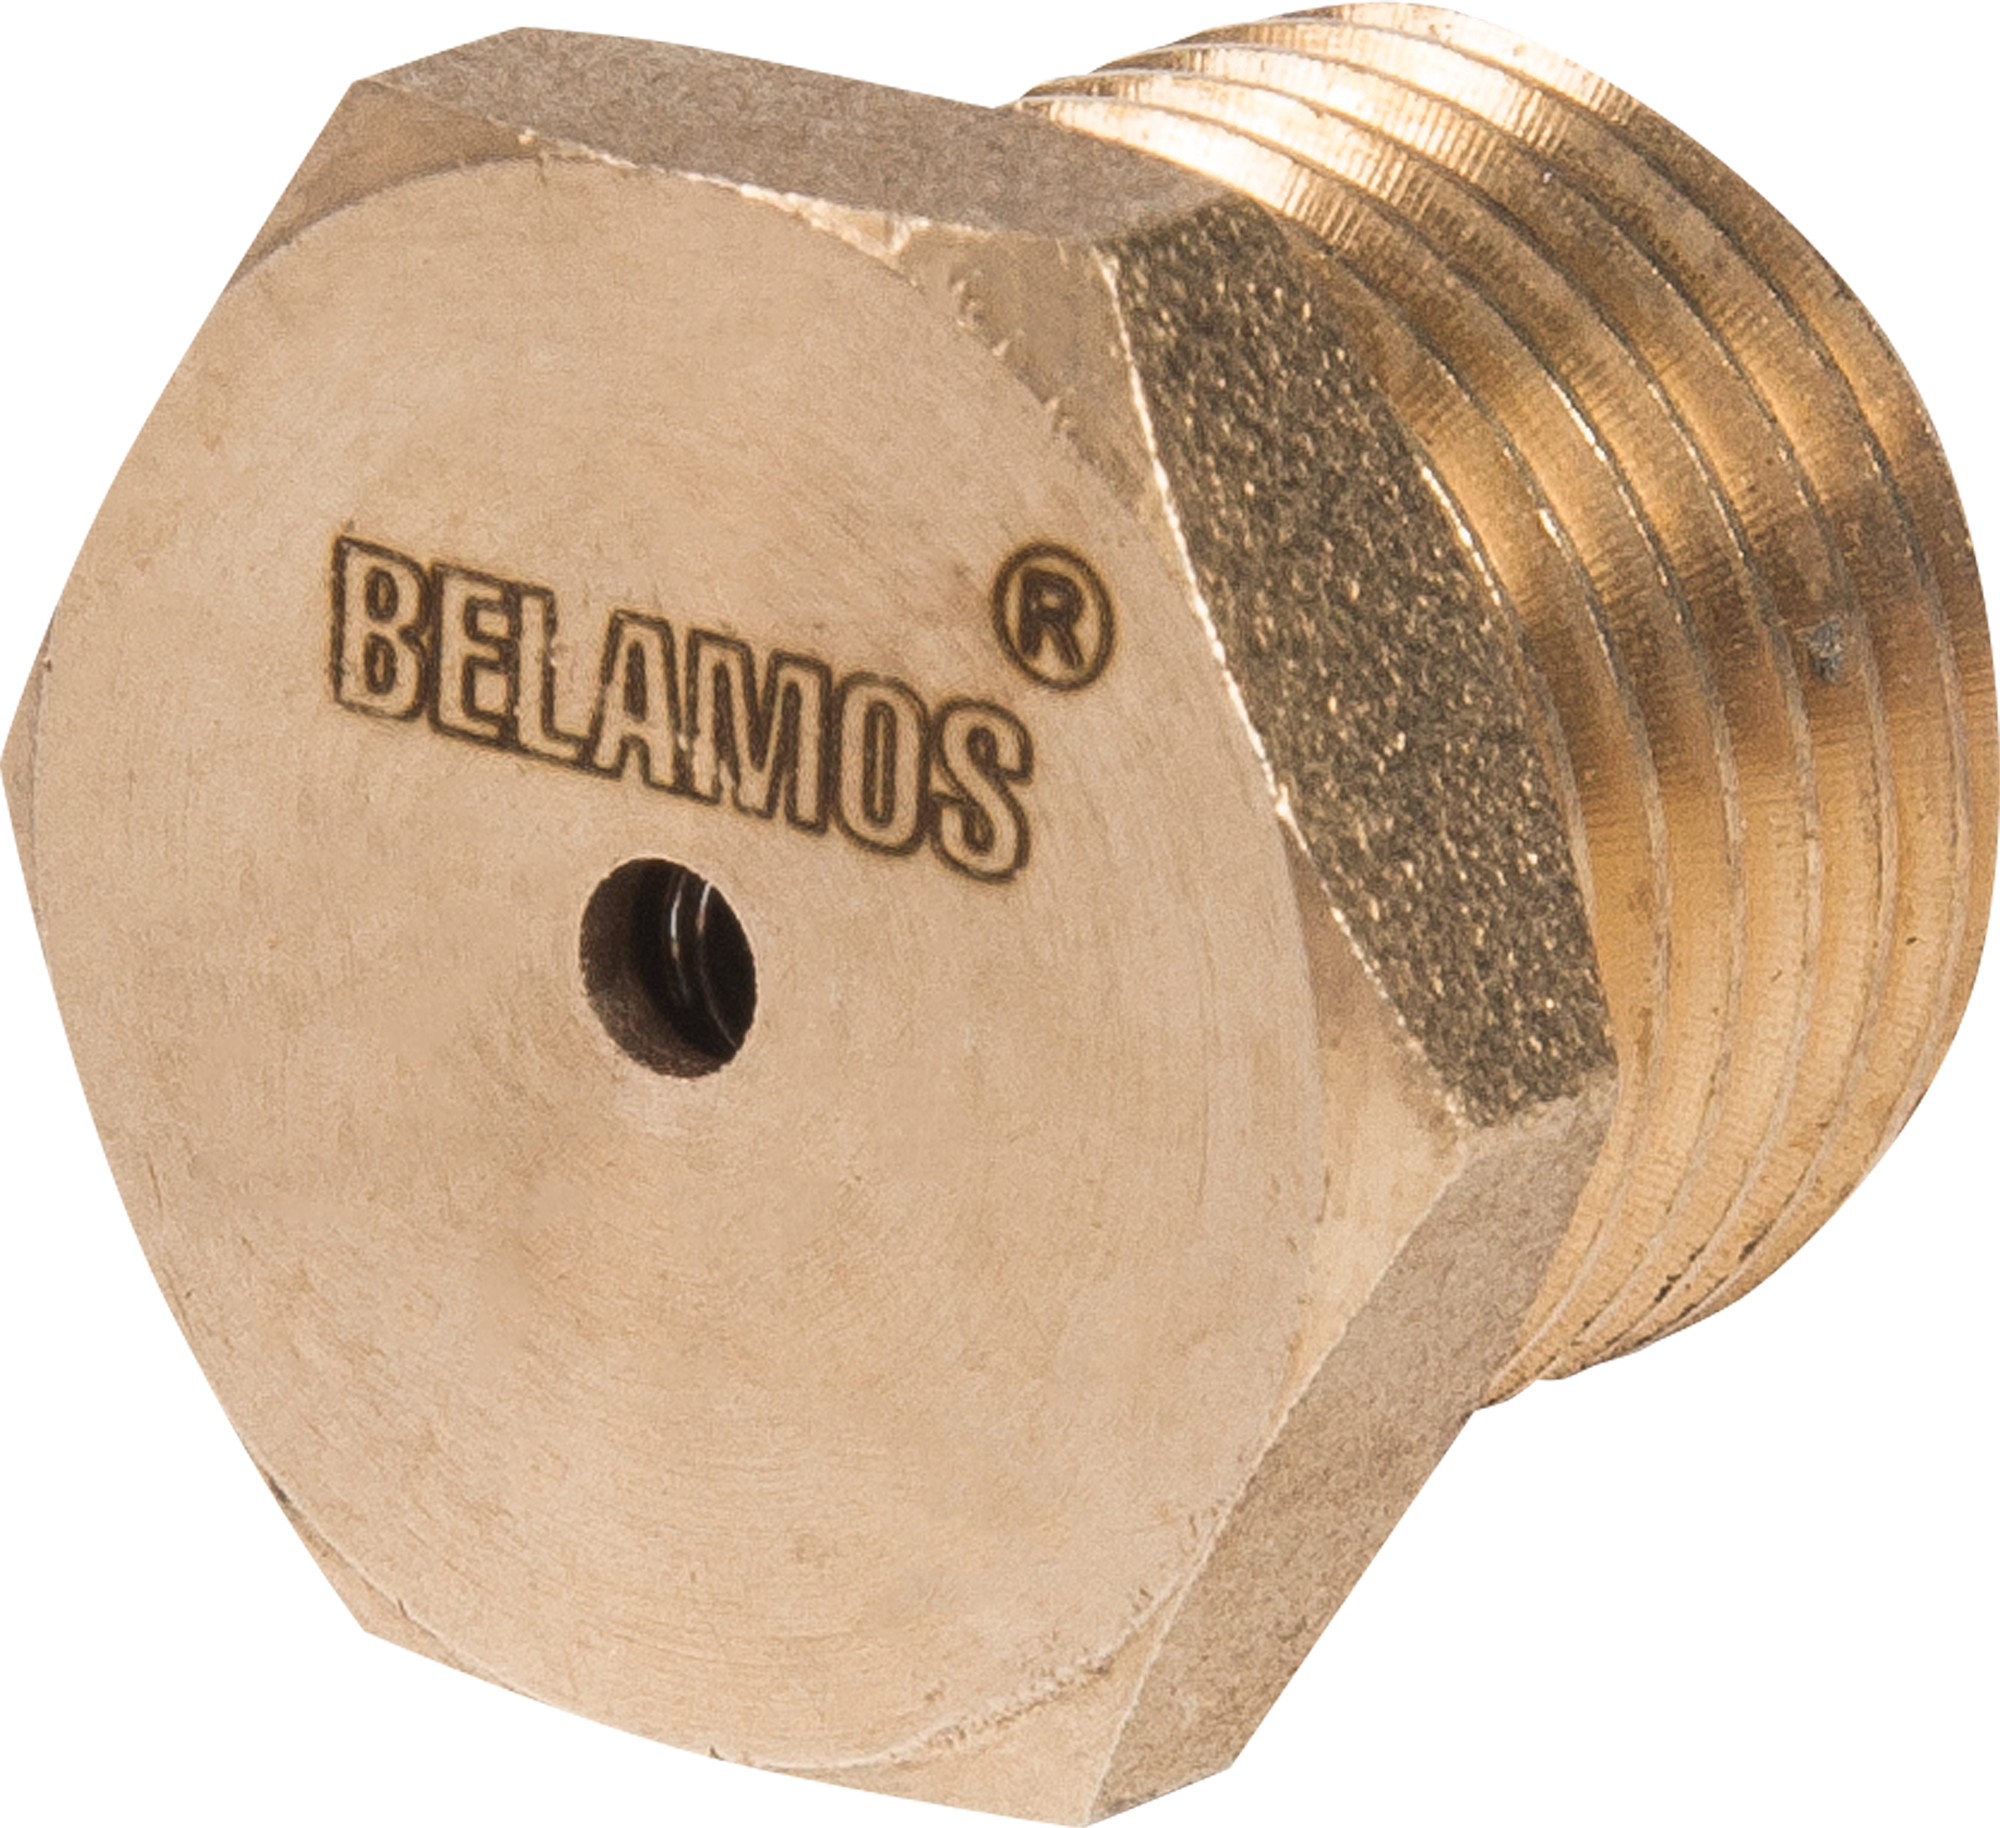 Спускной клапан купить. Клапан сливной FV-В 1/2 Беламос. Клапан сливной для скважины Беламос FV-B 1/2. Автоматический сливной клапан для скважины 1/2". Автоматический сливной клапан для скважины 3/4".